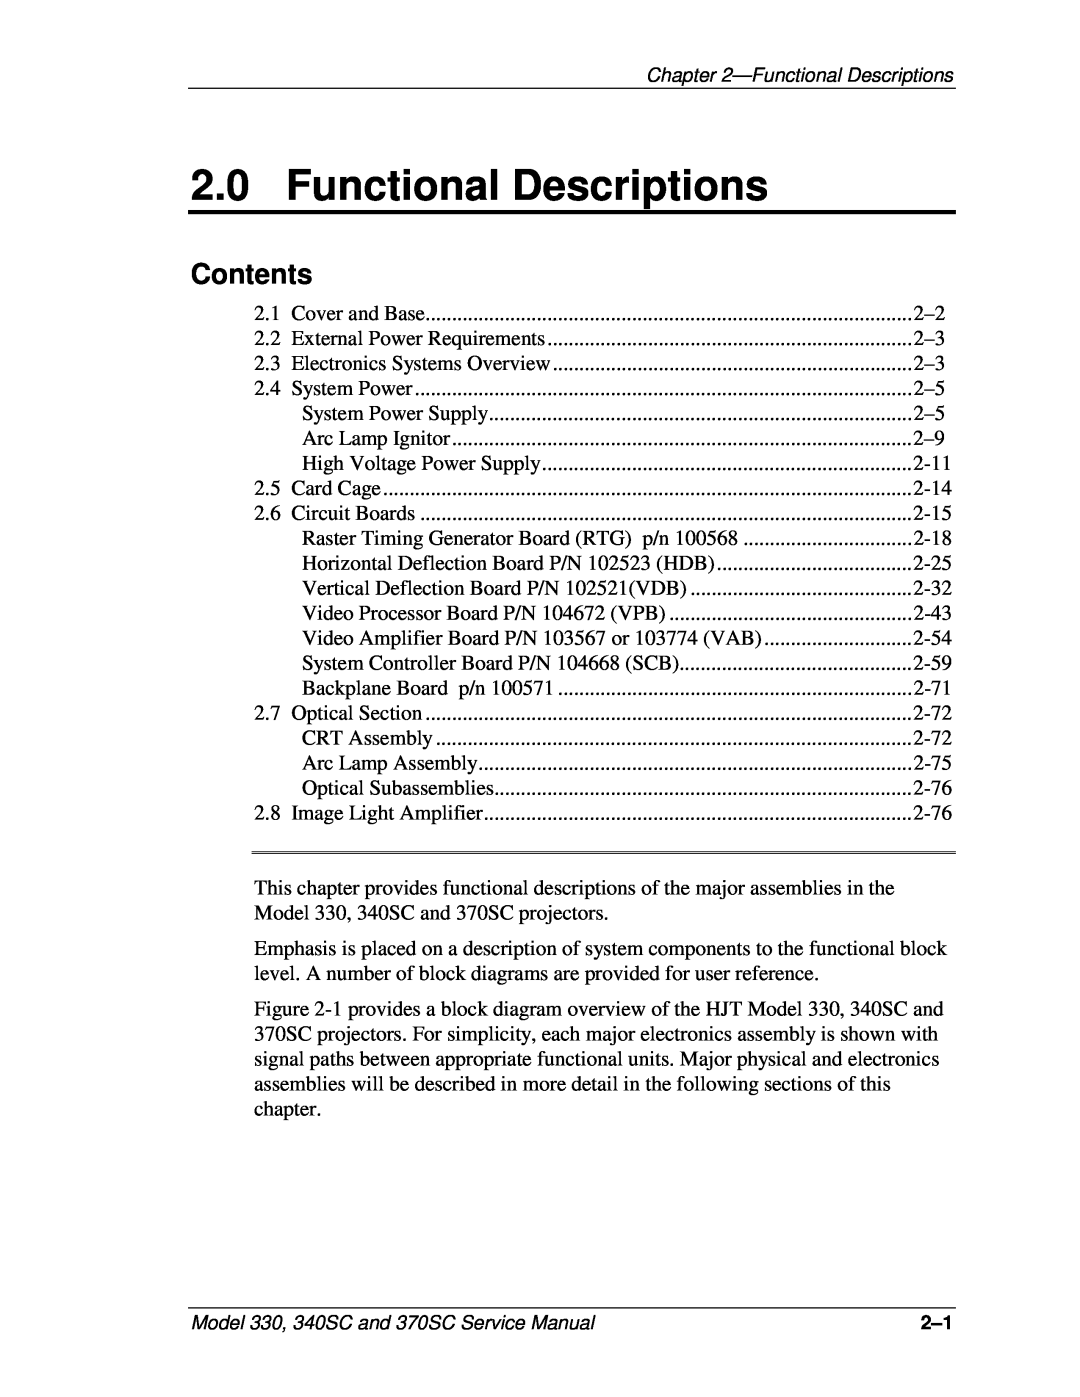 JVC 370 SC, 330, 340 SC service manual Functional Descriptions, Contents 